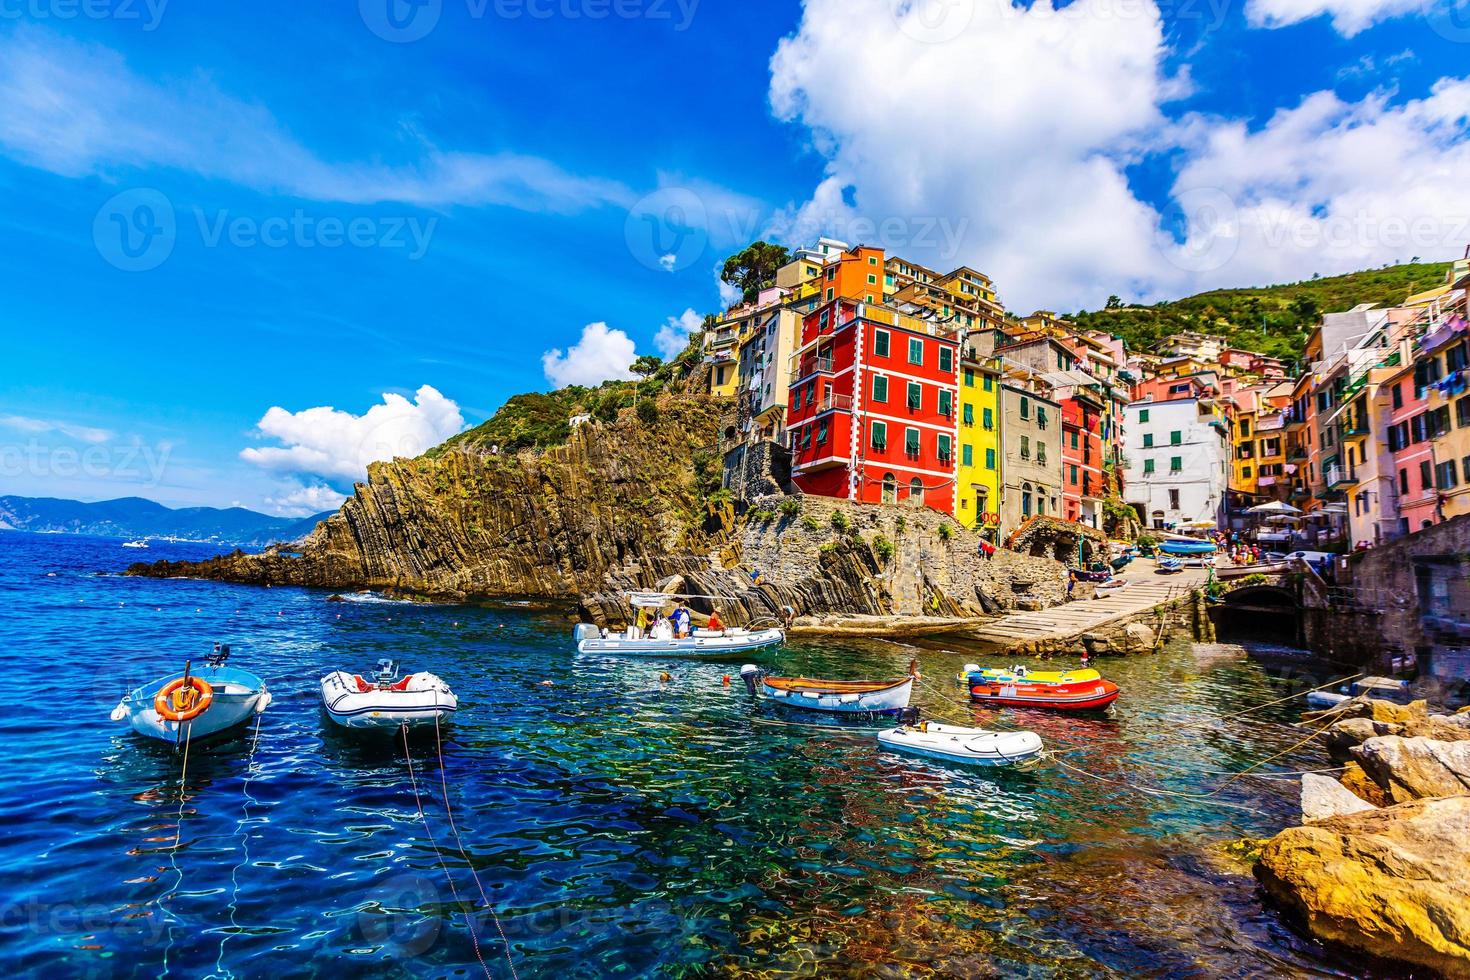 vista de las coloridas casas a lo largo de la costa de la zona de cinque terre en riomaggiore, italia foto